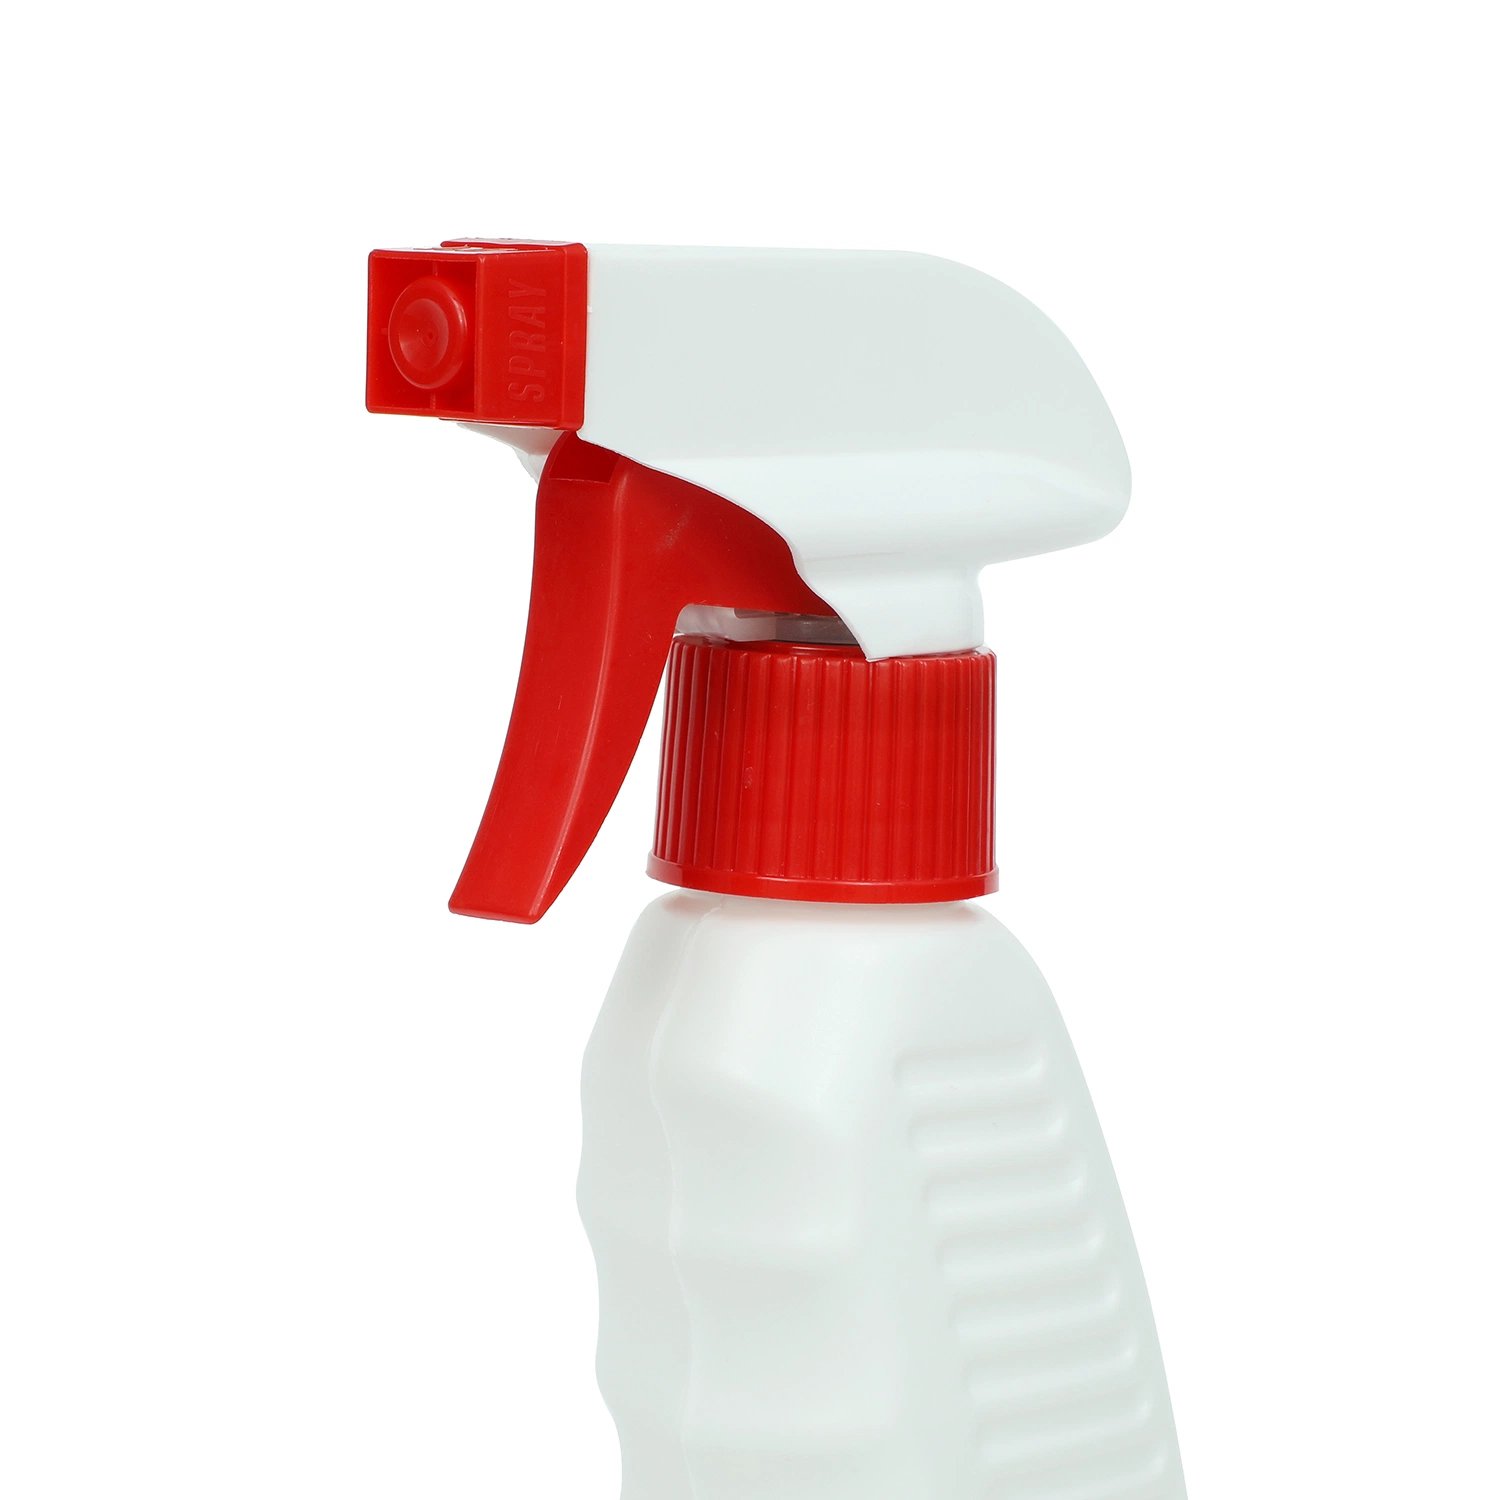 Geruchsentferner Deodorant Anti-Bakterien Reinigungsprodukte Haustierzubehör Haushaltsreinigung